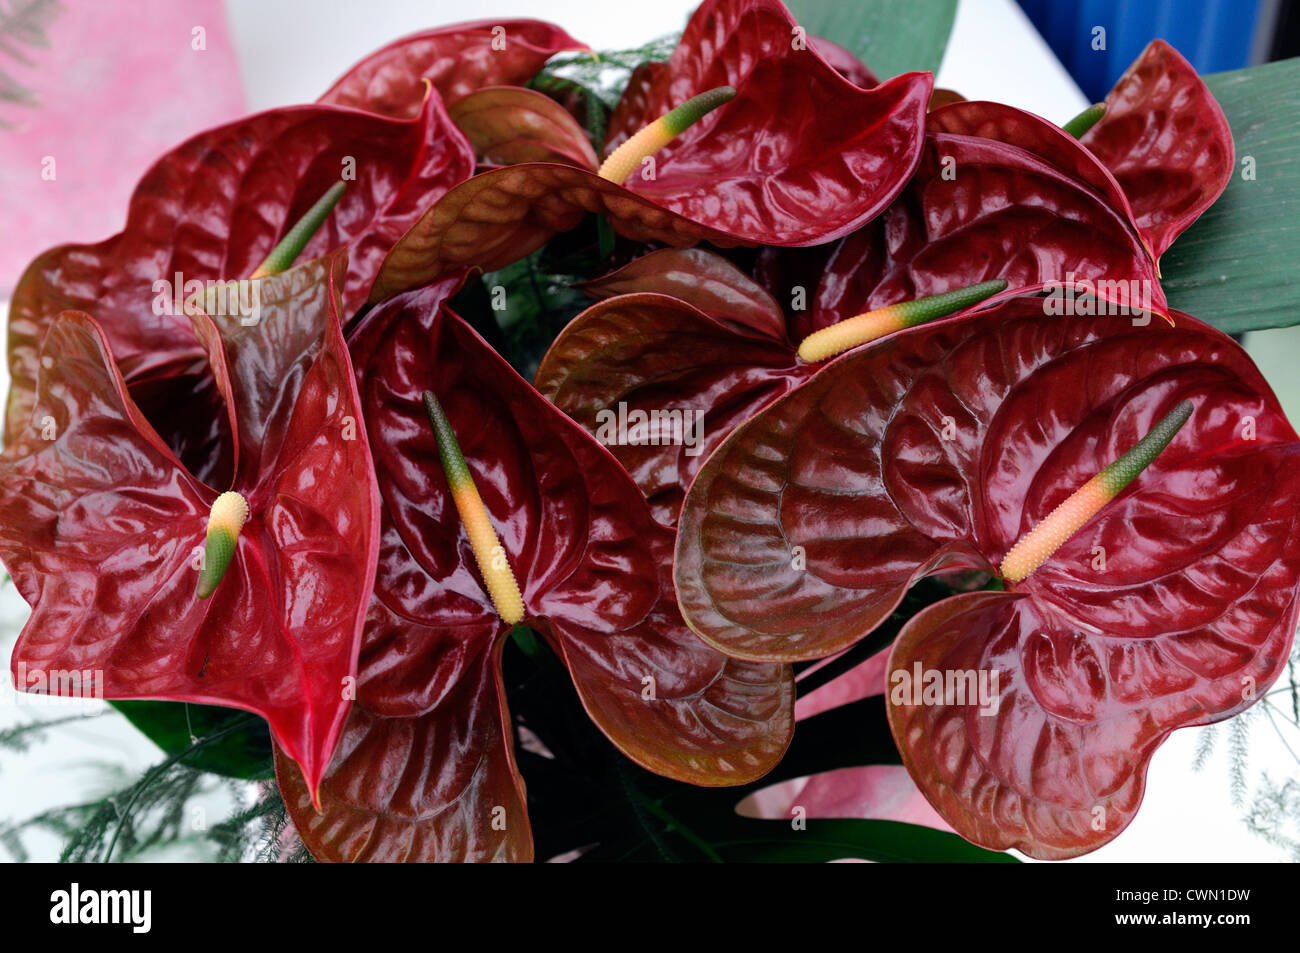 Antruina anthurium rouge fleurs marron choco spathe spadice libre selective focus portraits de plantes tropicales exotiques Banque D'Images